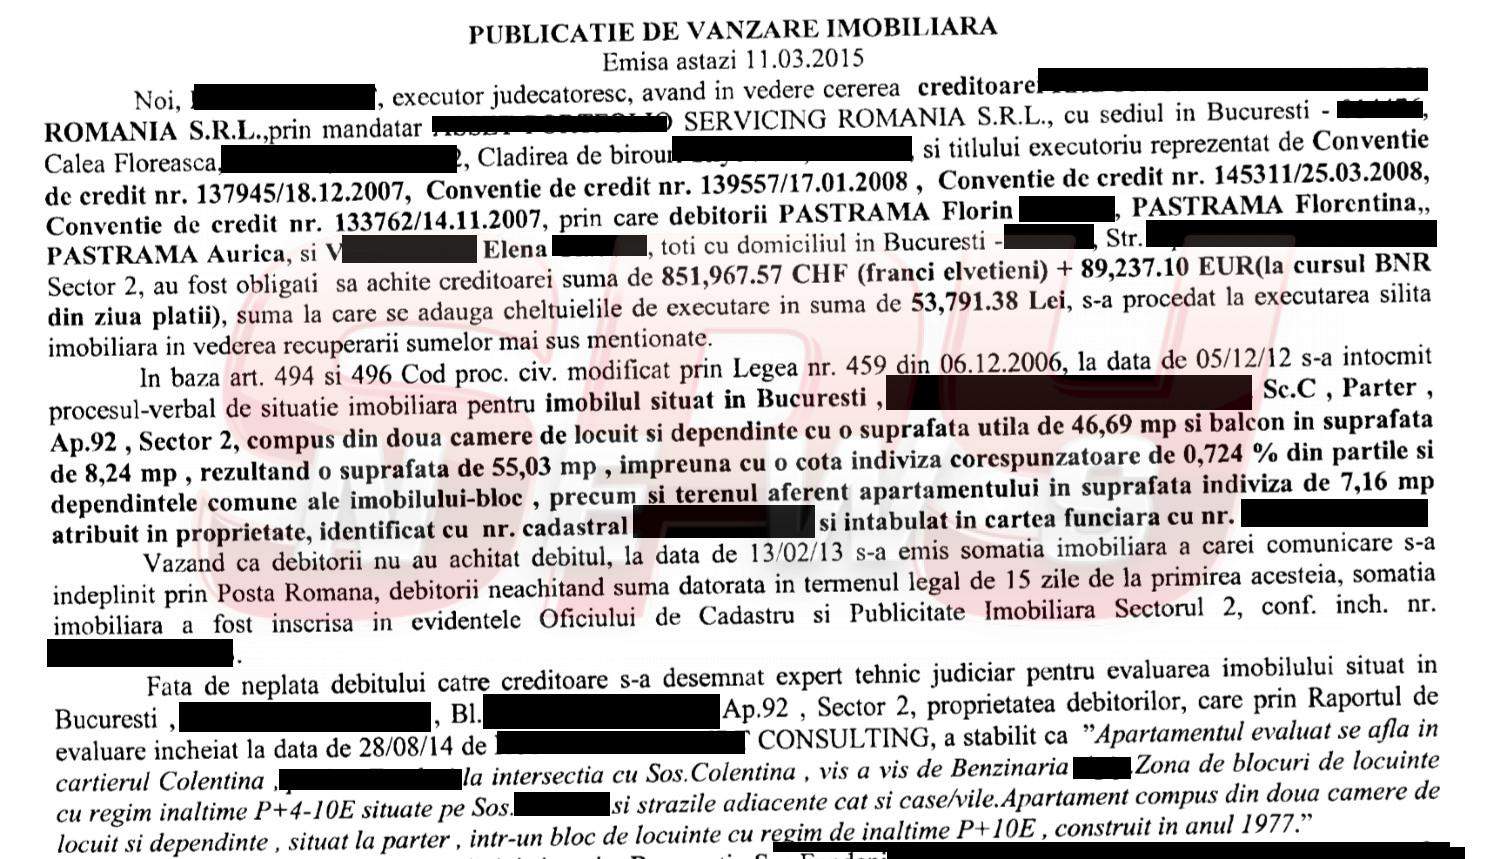 EXCLUSIV / Florin Pastramă, "ţeapă" de un milion de euro! Ce i-au făcut recuperatorii! Documente bombă